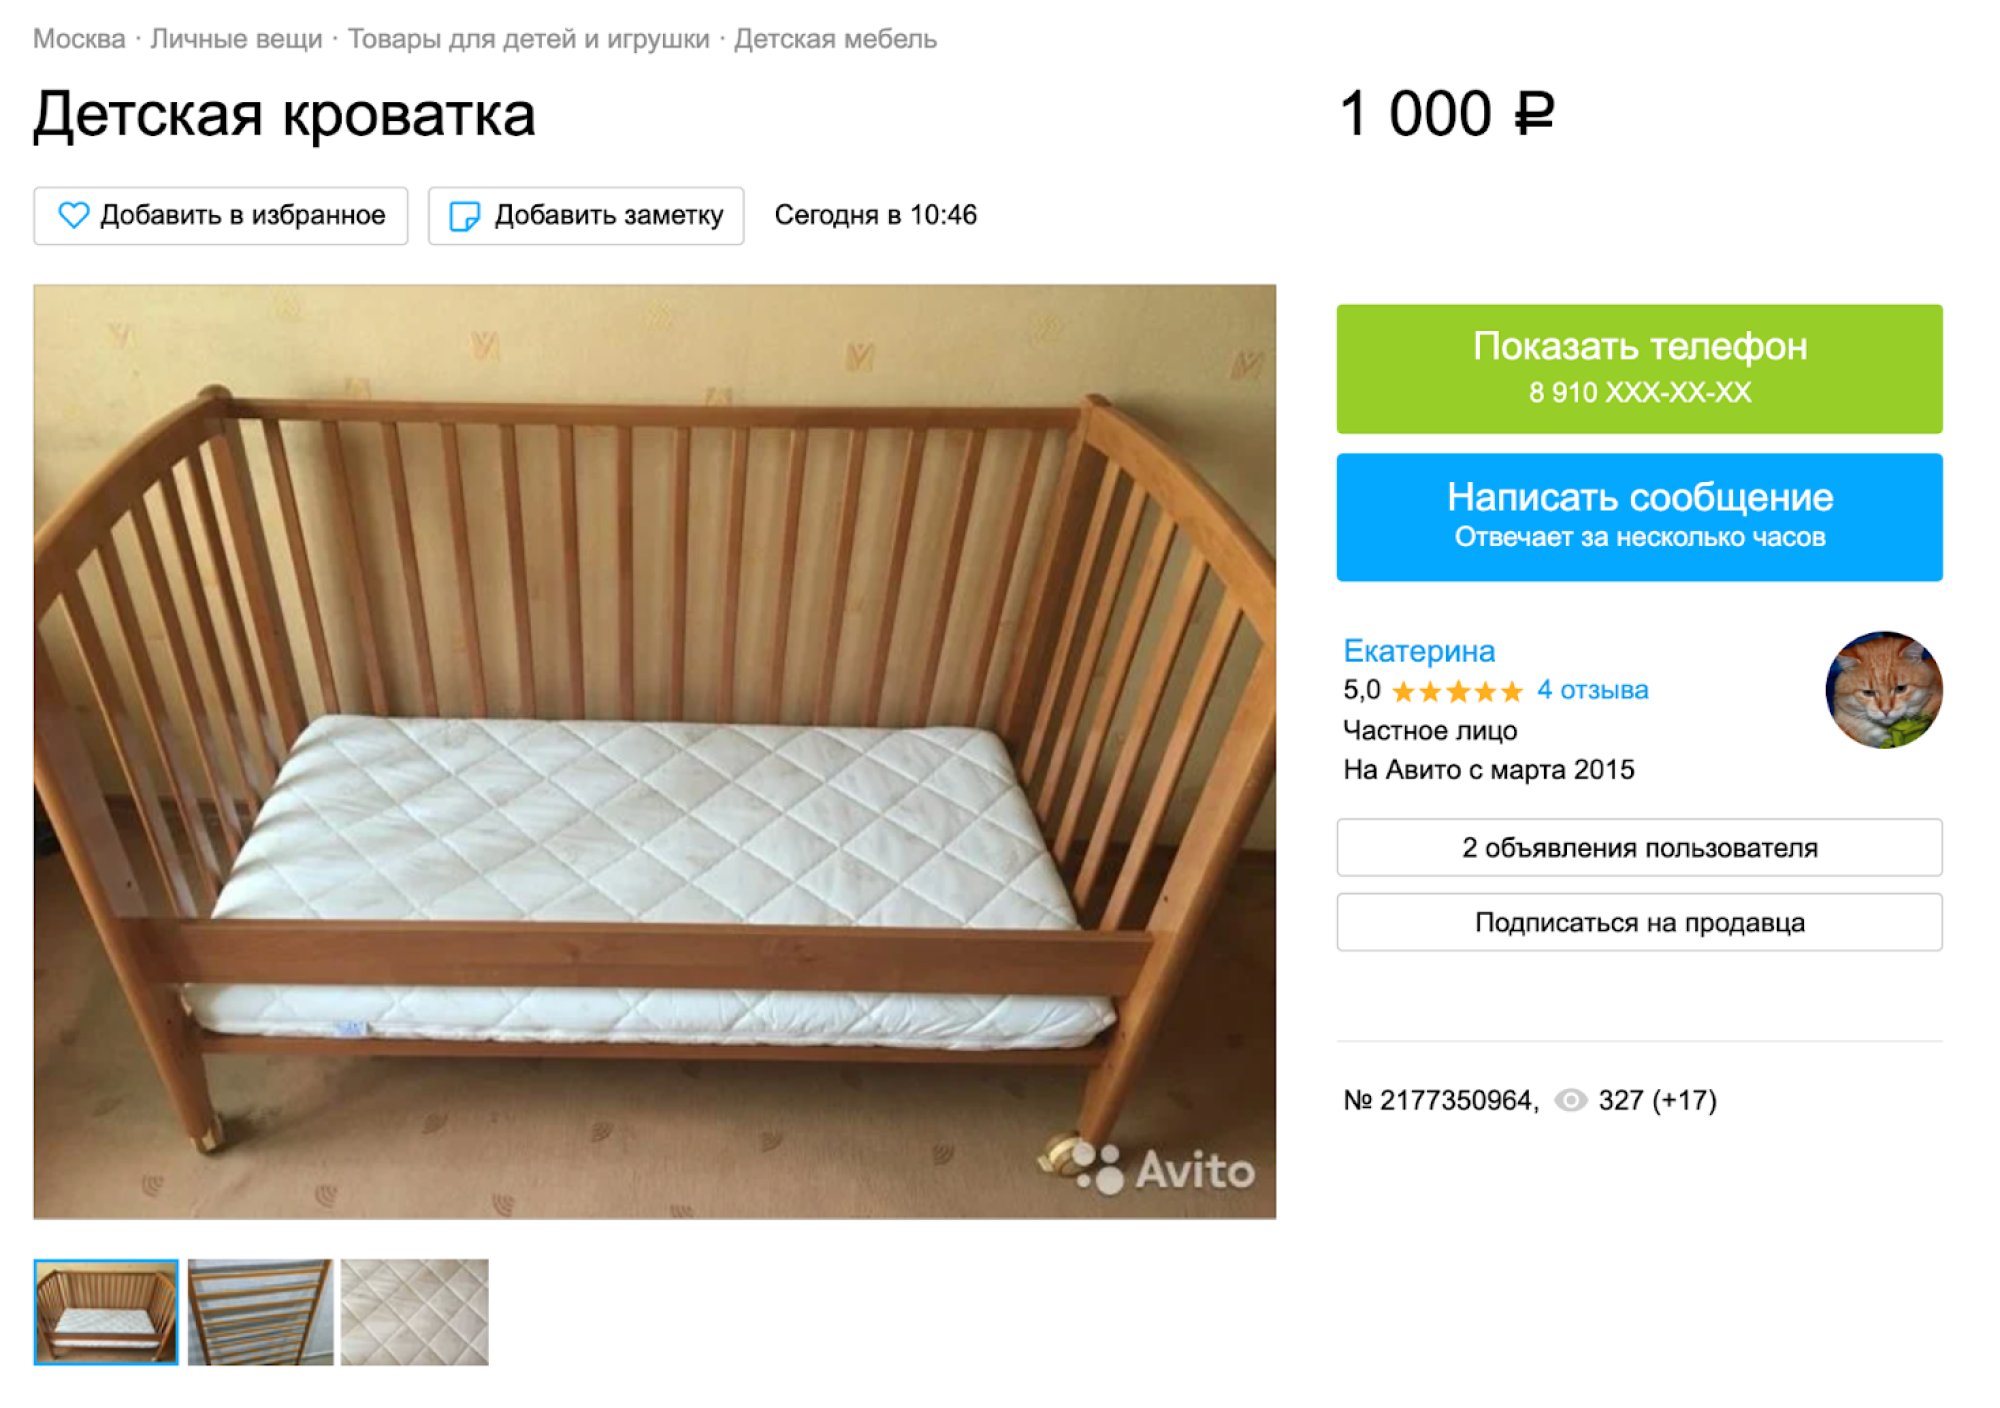 Если вам нужна просто кровать и матрас, неважно, какого цвета и формы, рекомендую заглянуть на «Авито». Как правило, после одного ребенка мебель в отличном состоянии. Источник: avito.ru